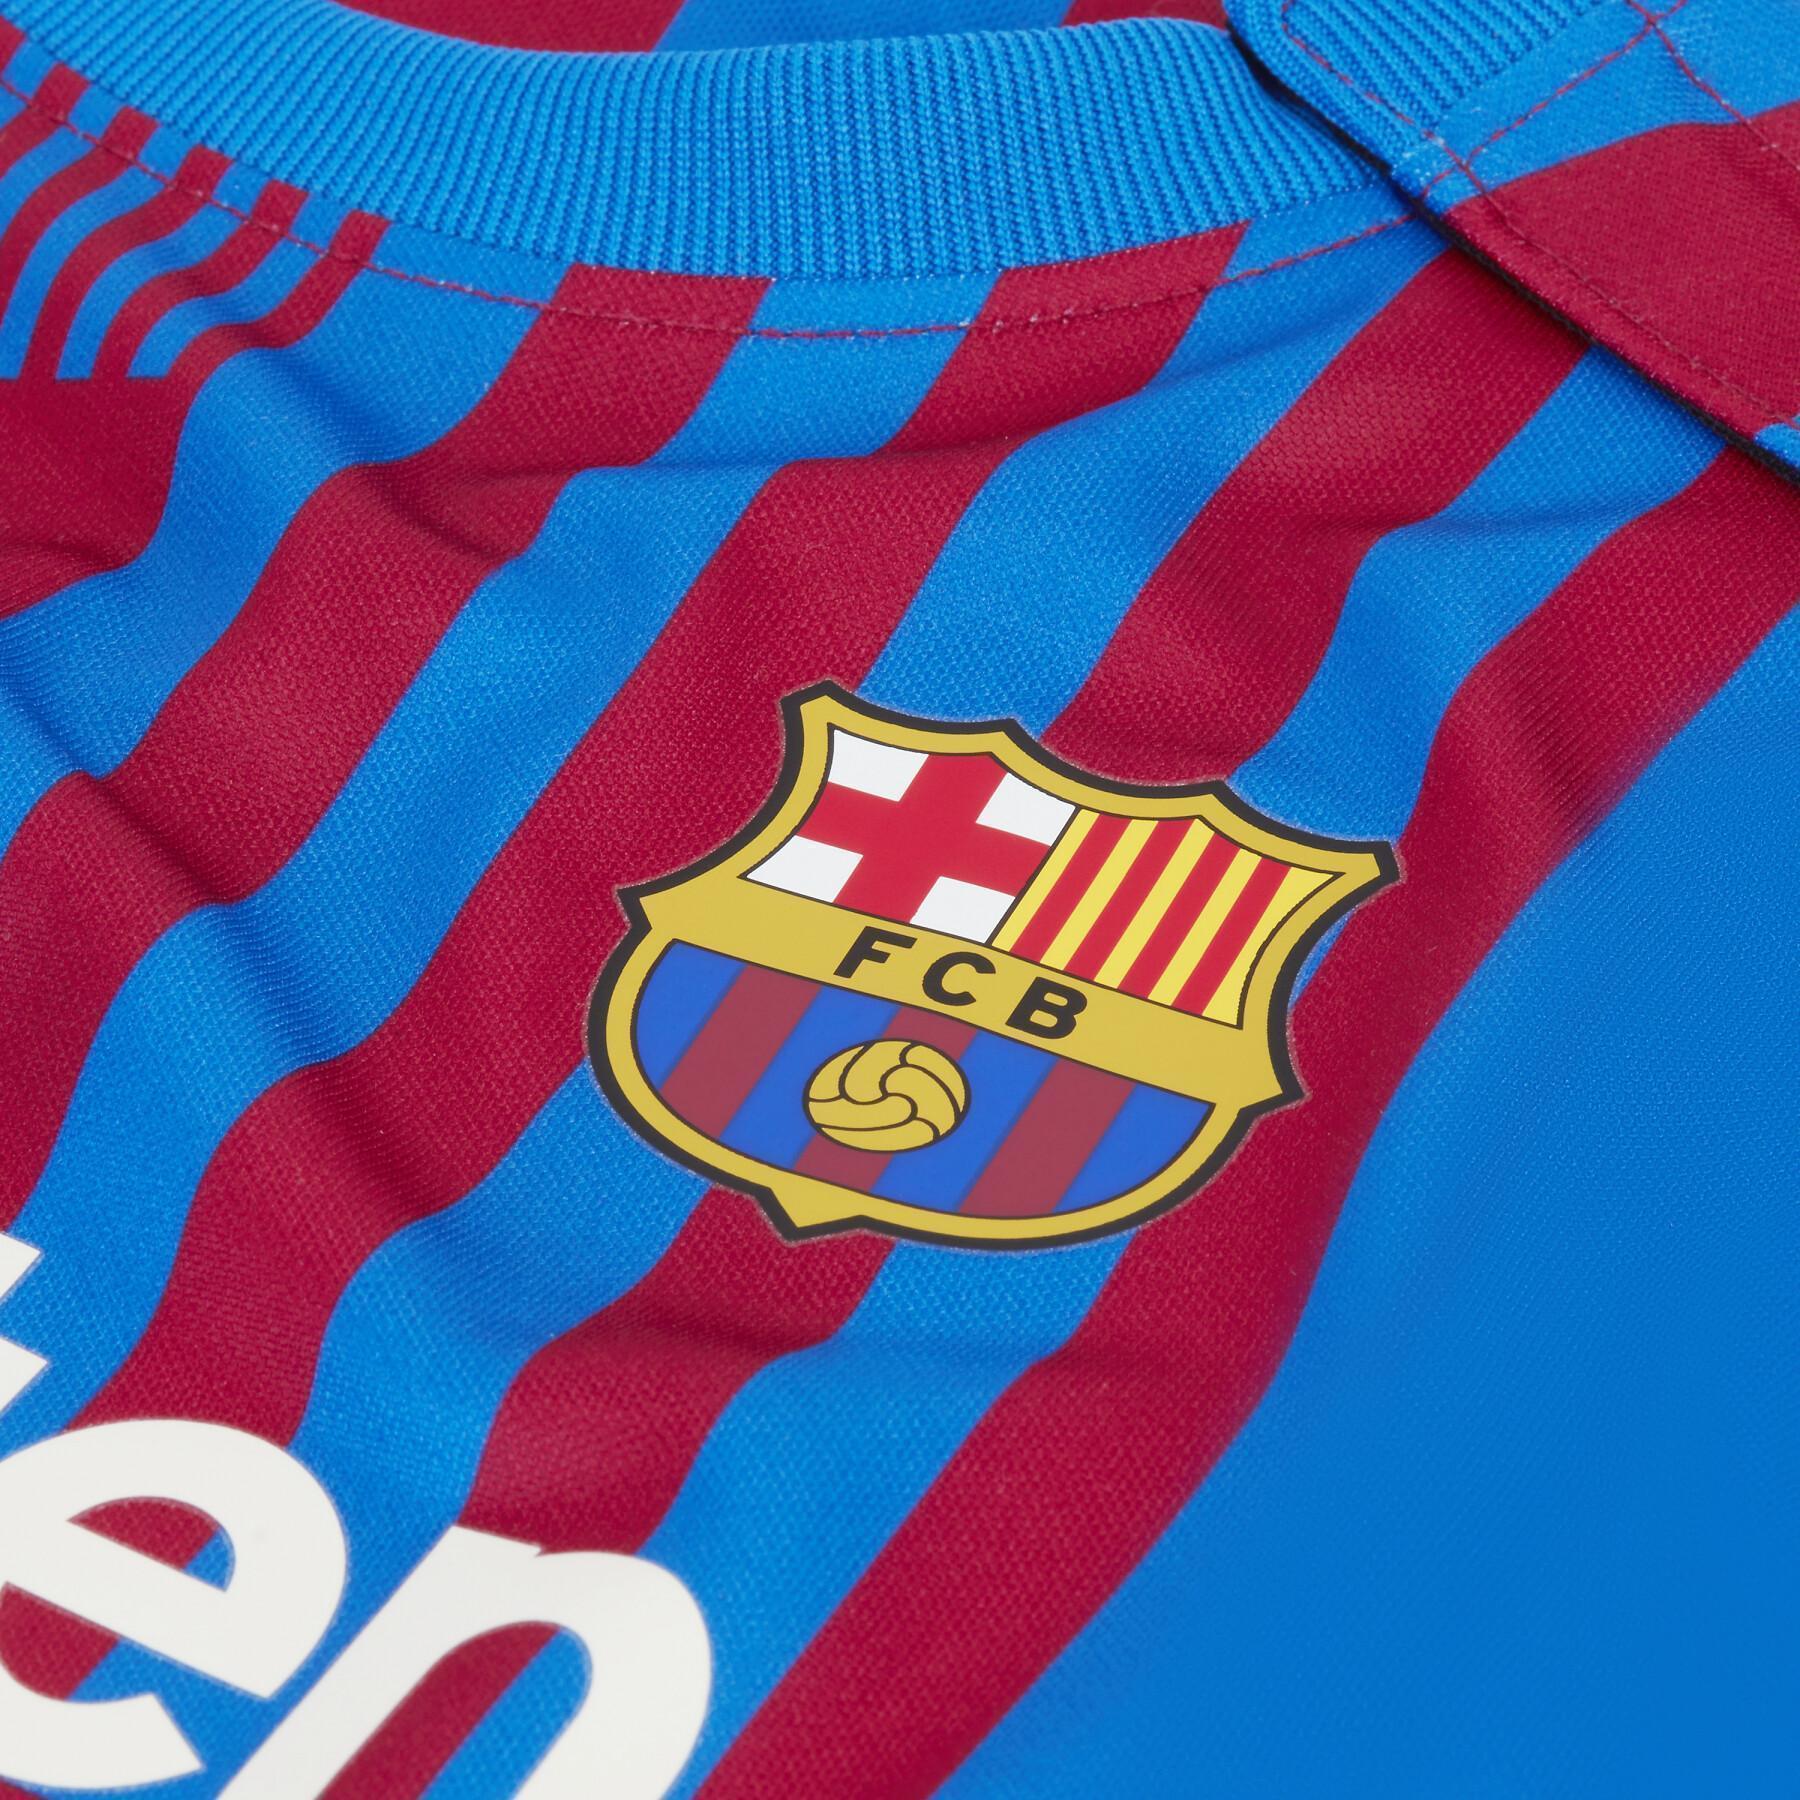 Ensemble bébé FC Barcelone 2021/22